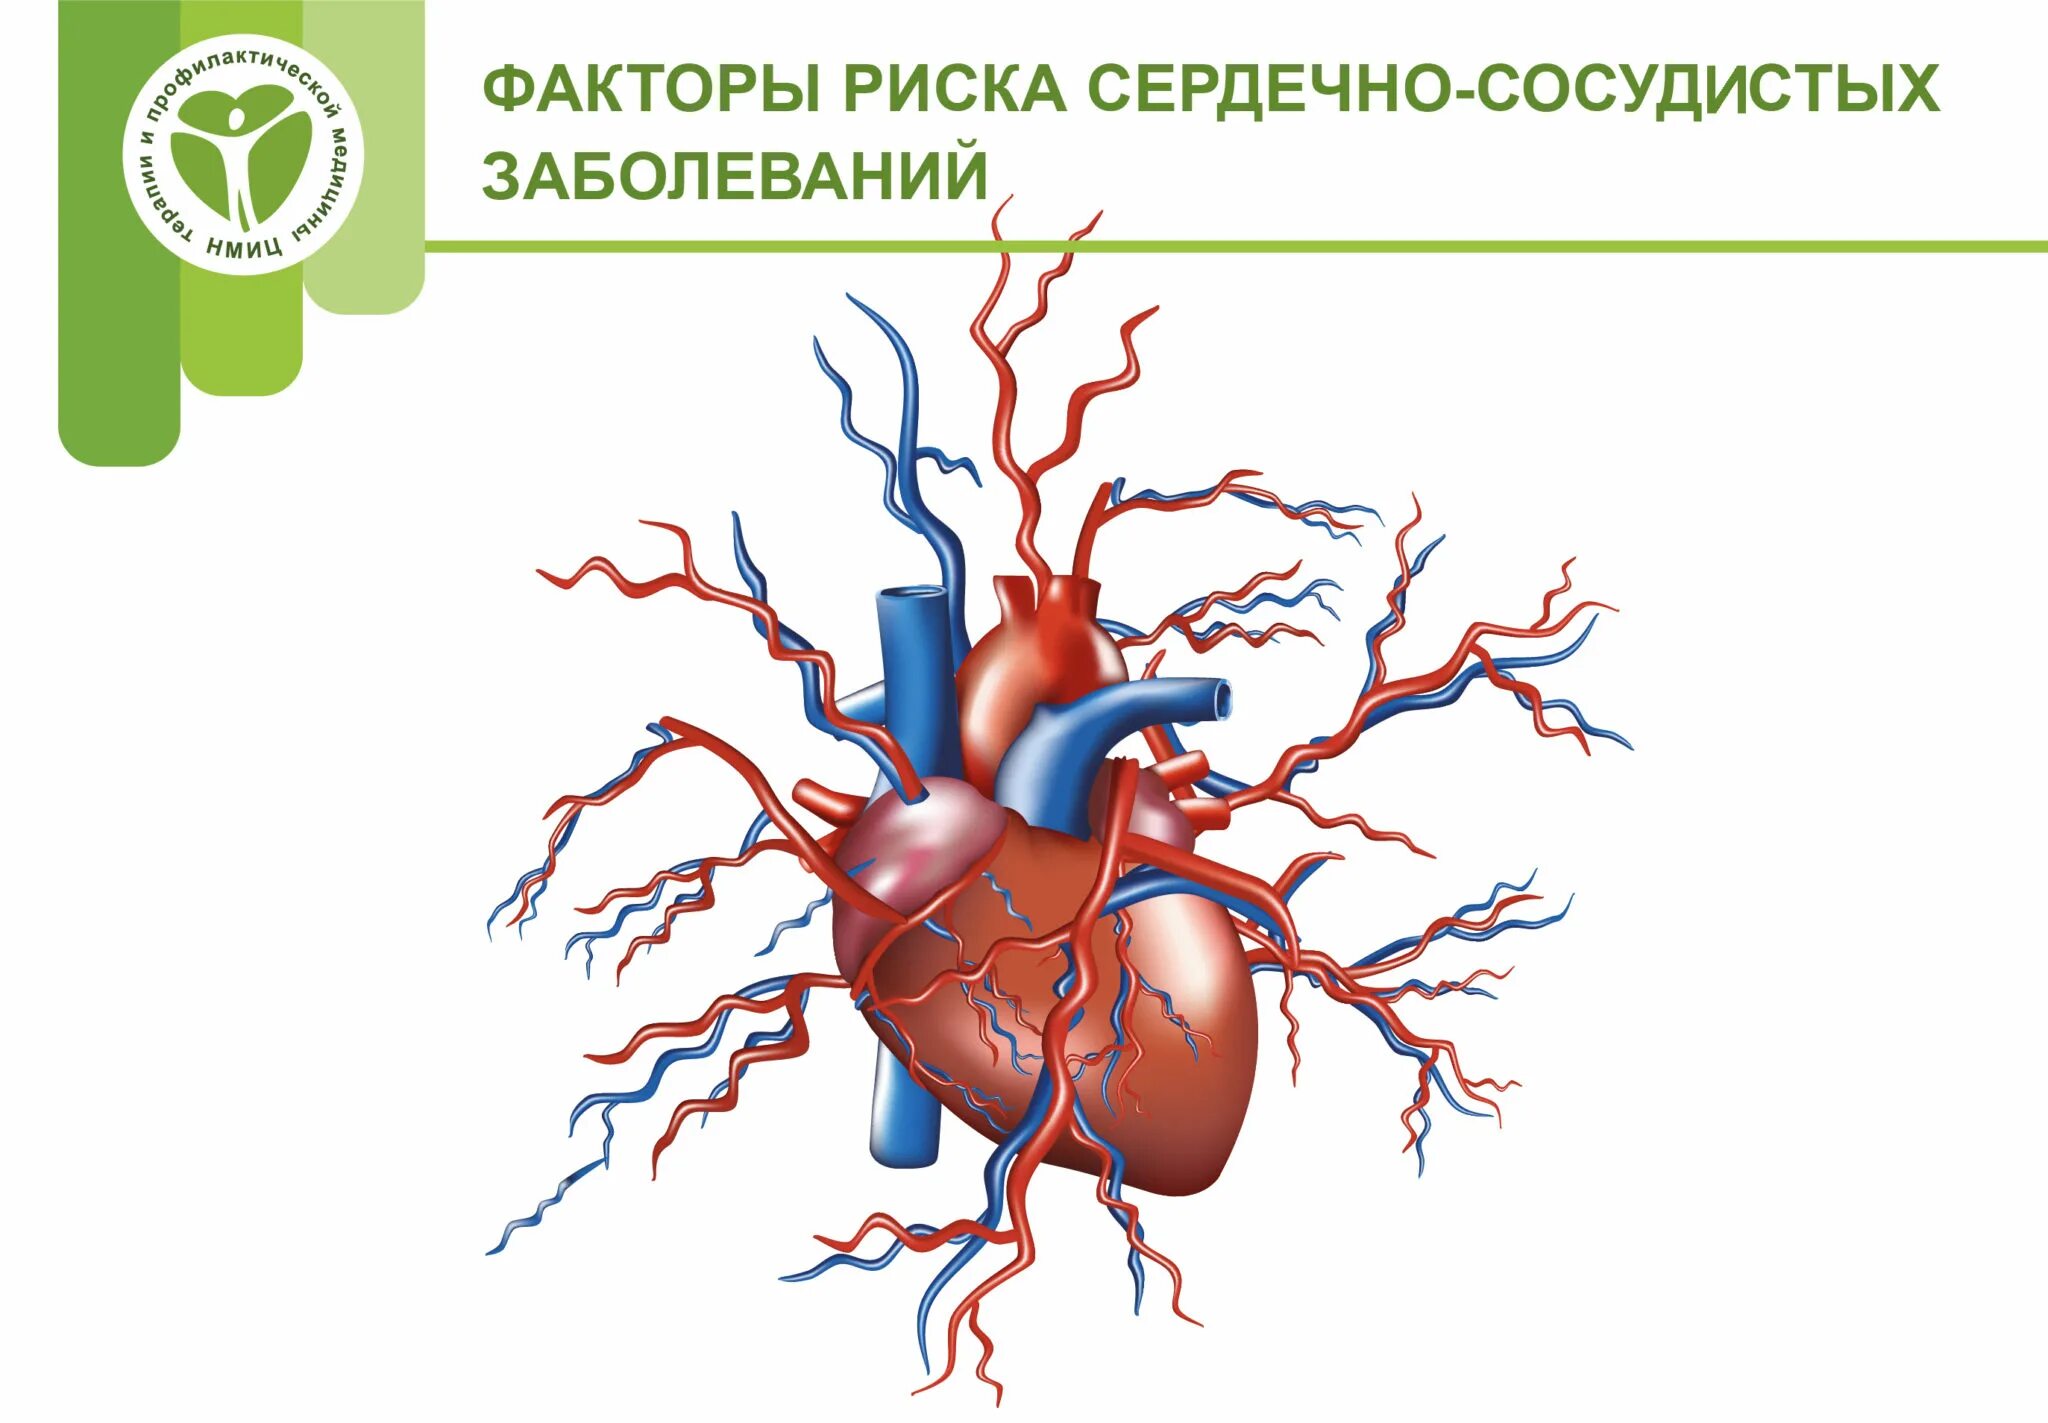 Сердечный ковид. Факторы риска возникновения сердечно-сосудистых заболеваний. Факторы риска при ССС. Основные факторы риска заболевания ССС. Факторы риска формирования сердечно-сосудистой патологии.